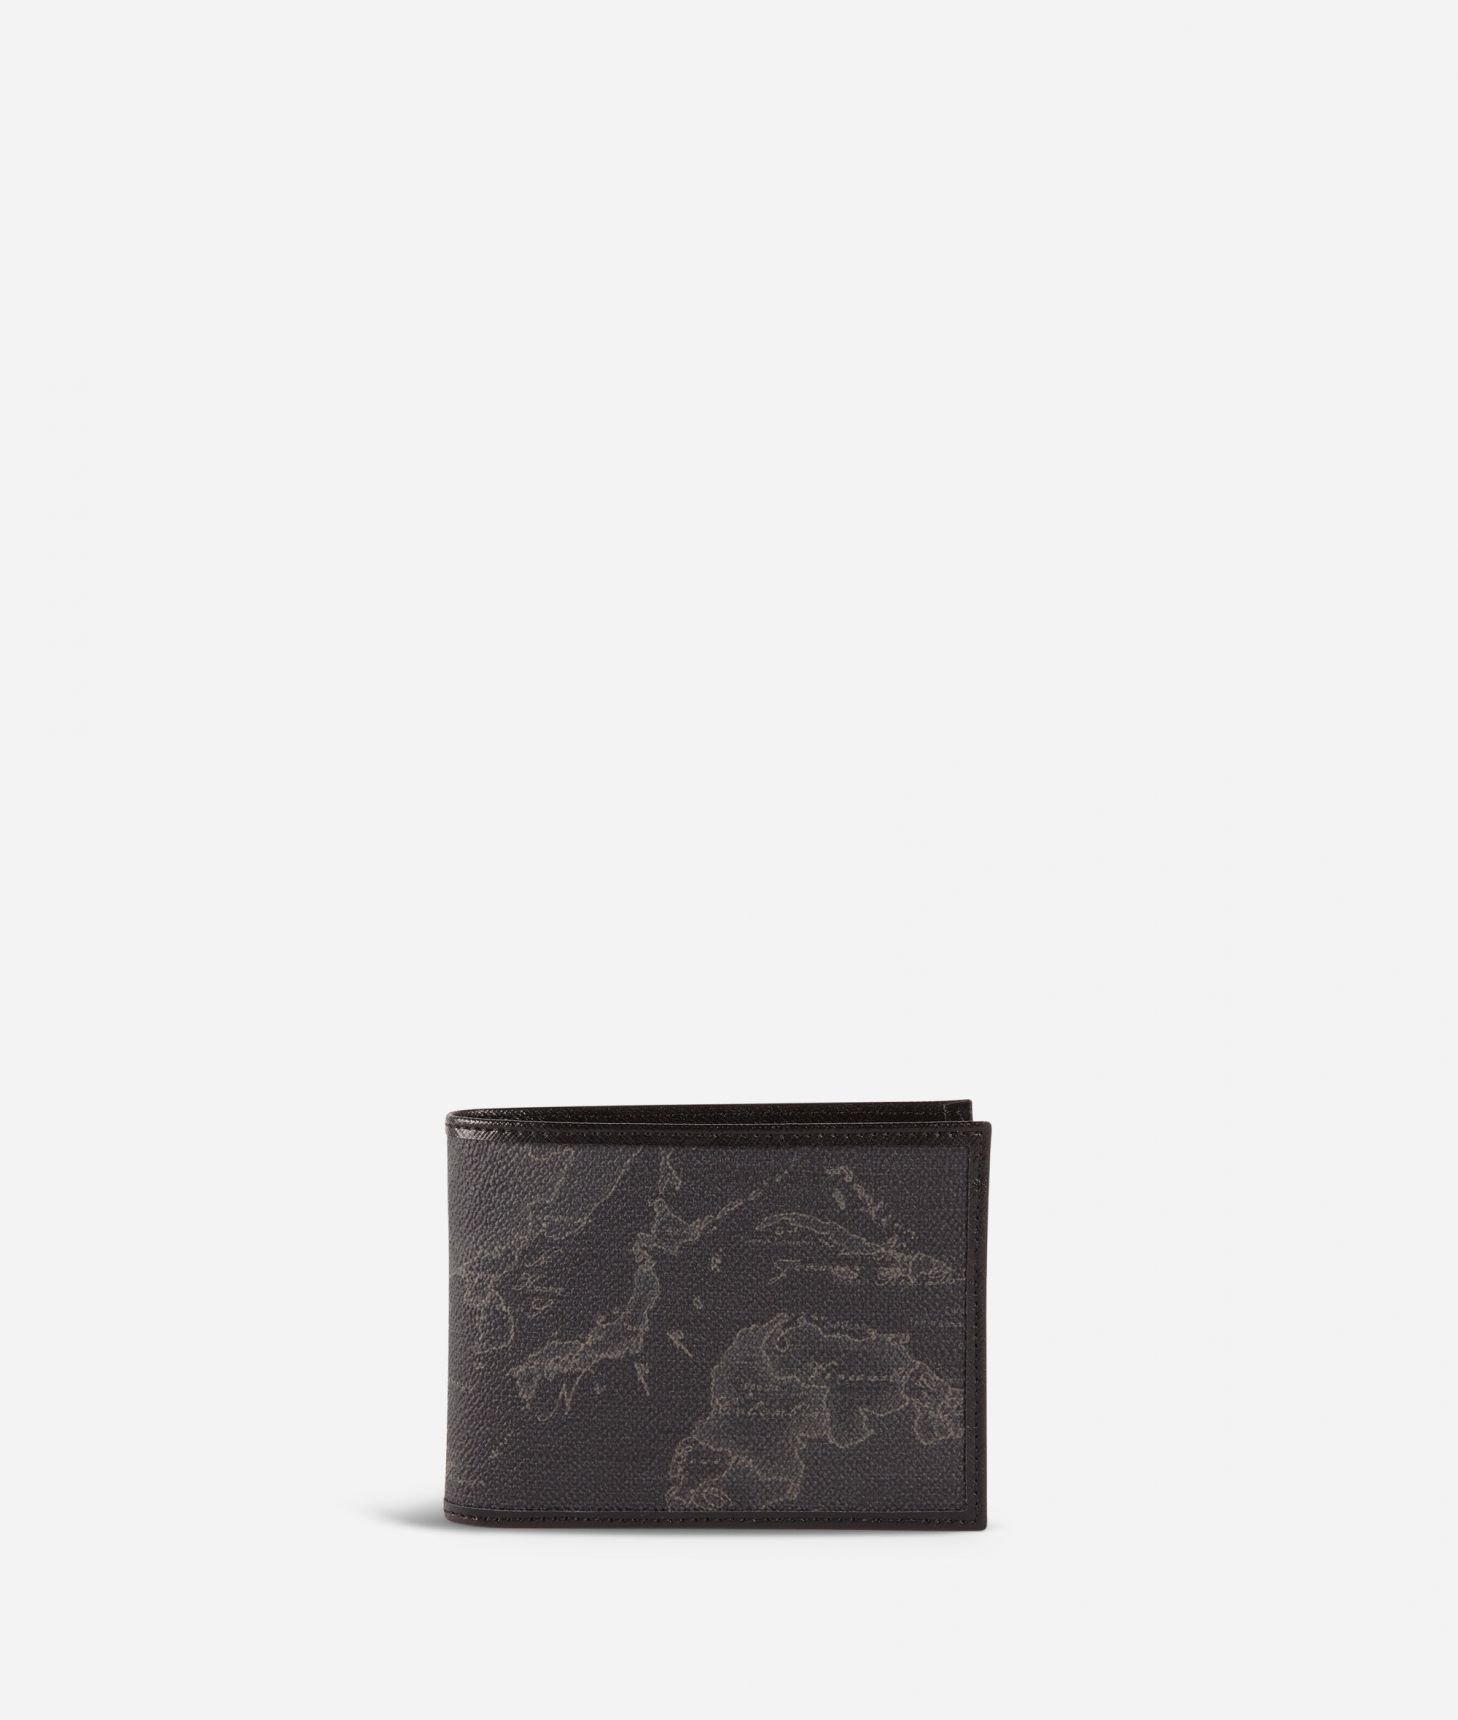 Geo Black men's wallet black,front